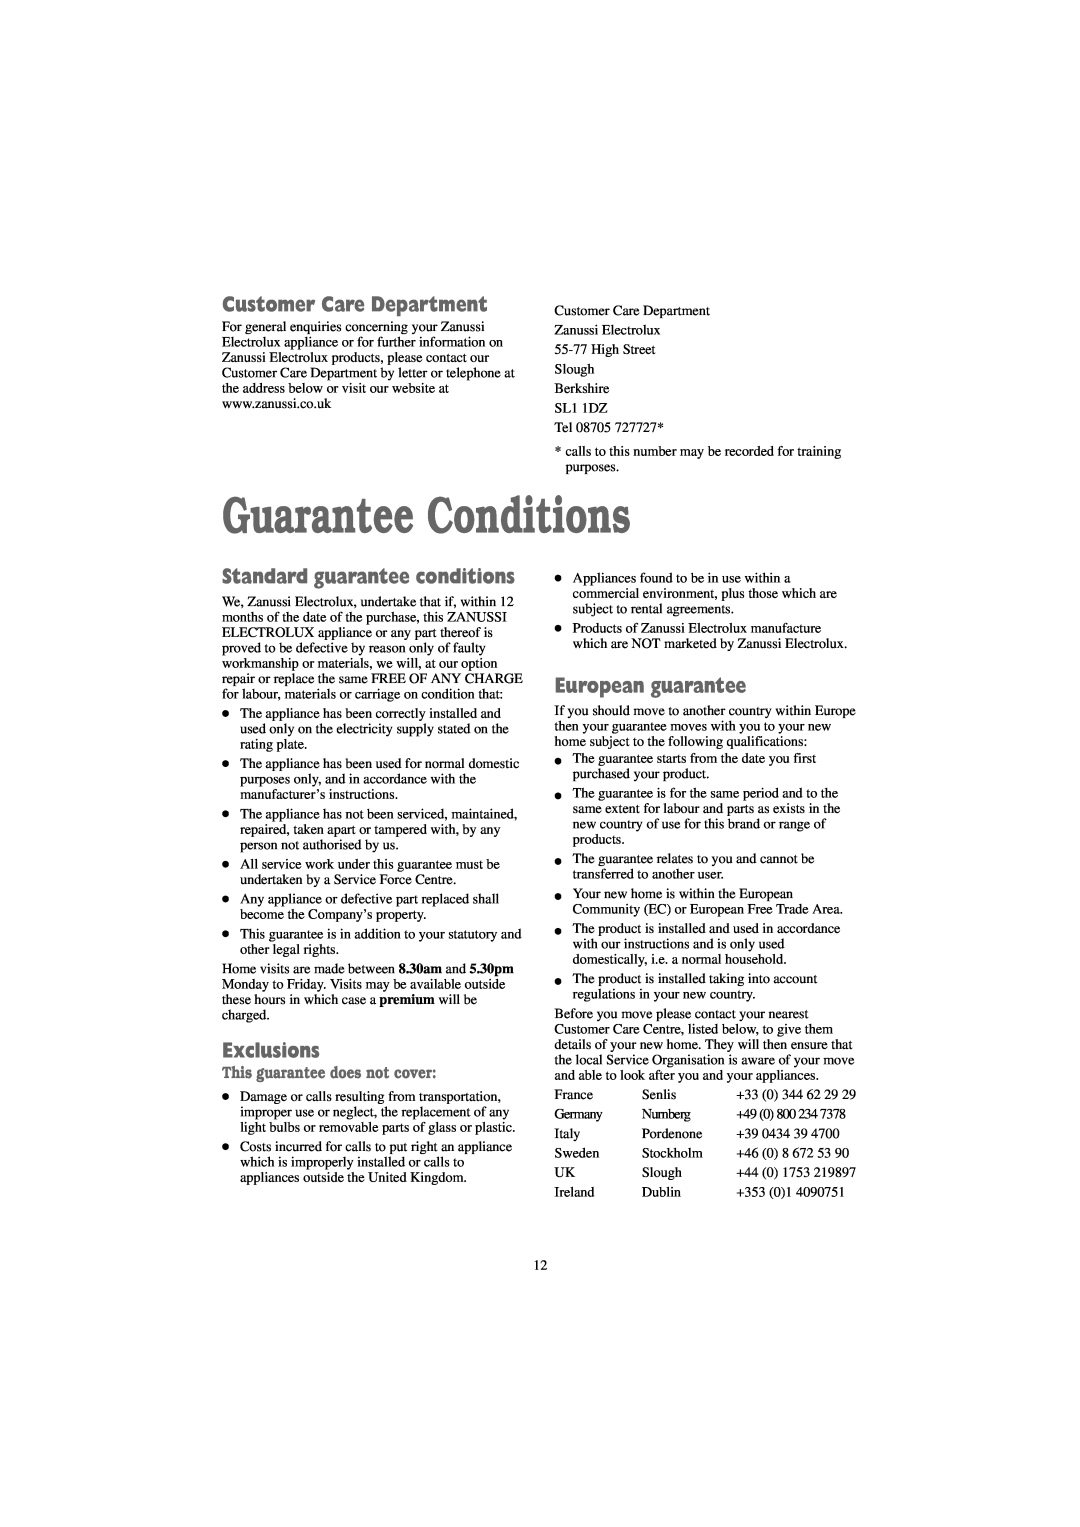 Zanussi TC 7114 S, TC 7114 W Guarantee Conditions, Customer Care Department, Standard guarantee conditions, Exclusions 